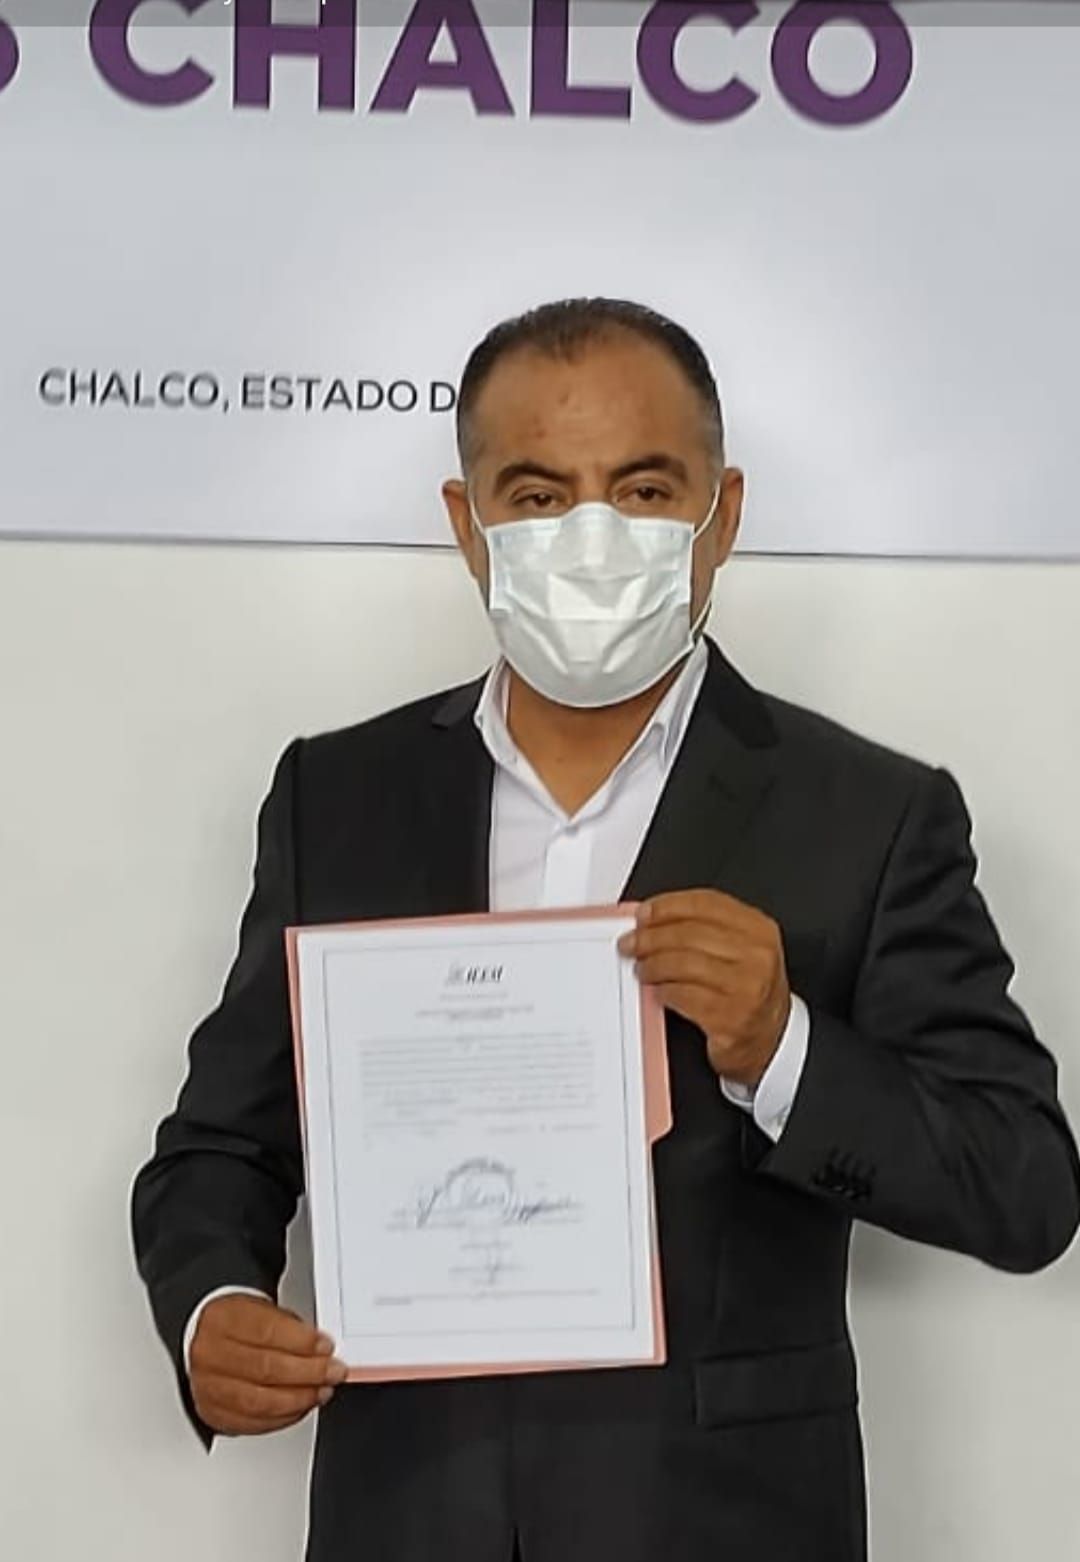 #El triunfo de Miguel Gutiérrez Morales es un logro del pueblo de Chalco